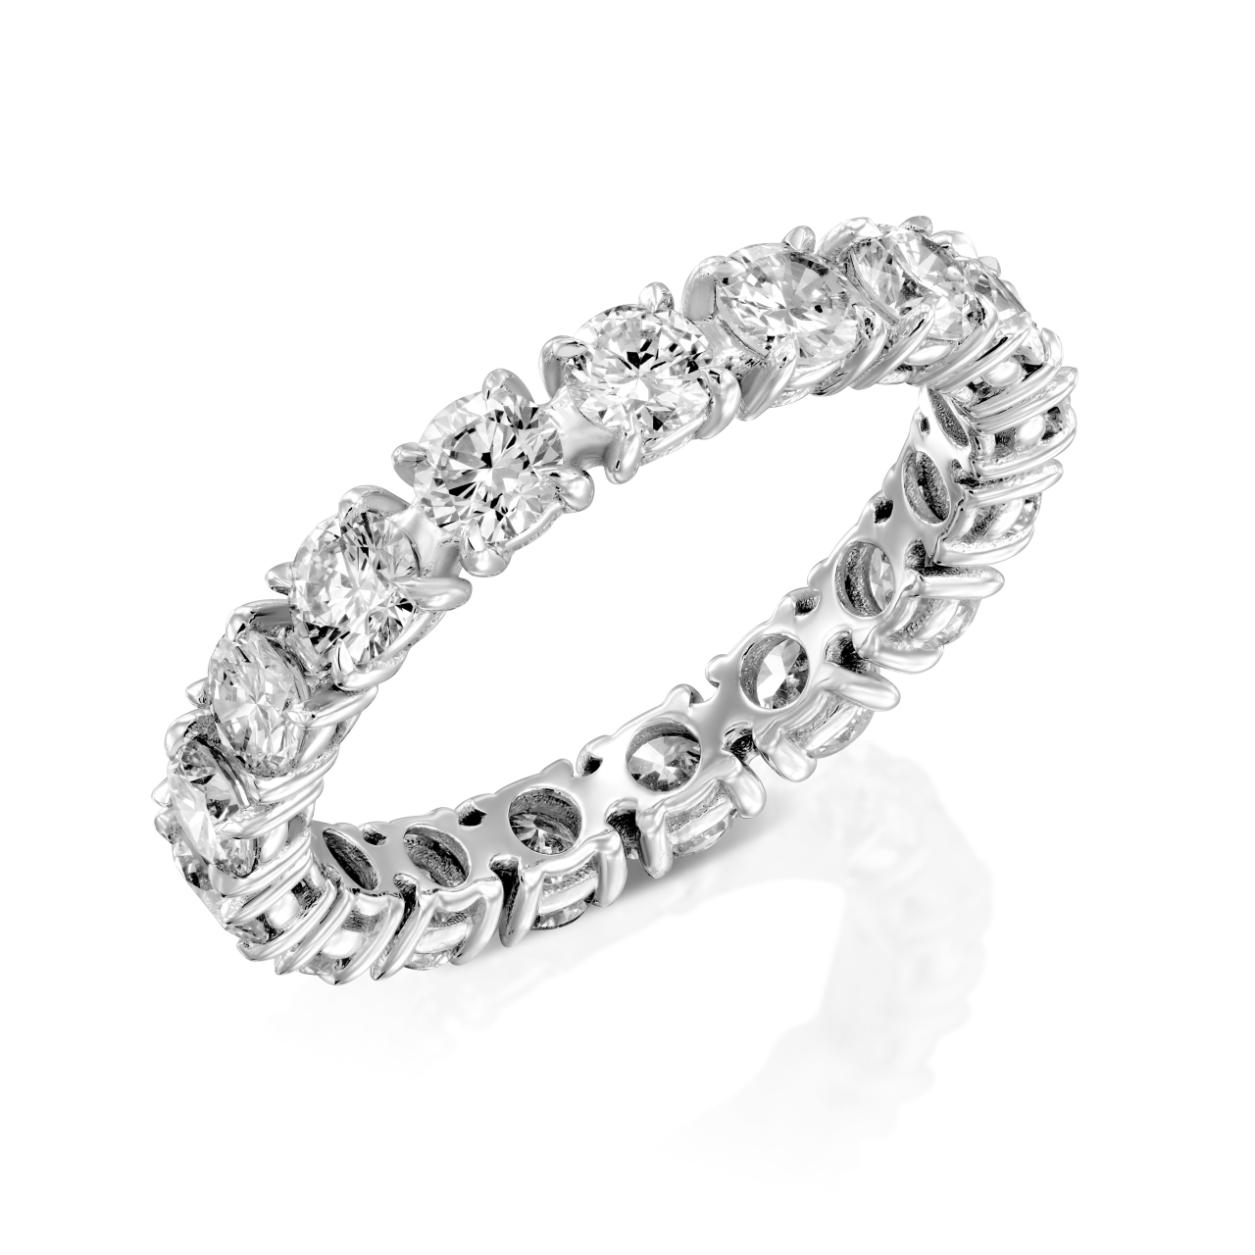 טבעת נצח יהלום נוצצת, טבעת יהלומים דגם Alexis R723im, משובצת במתכת לבנה בוהקת, אולי פלטינה או זהב לבן, מציגה סדרה.